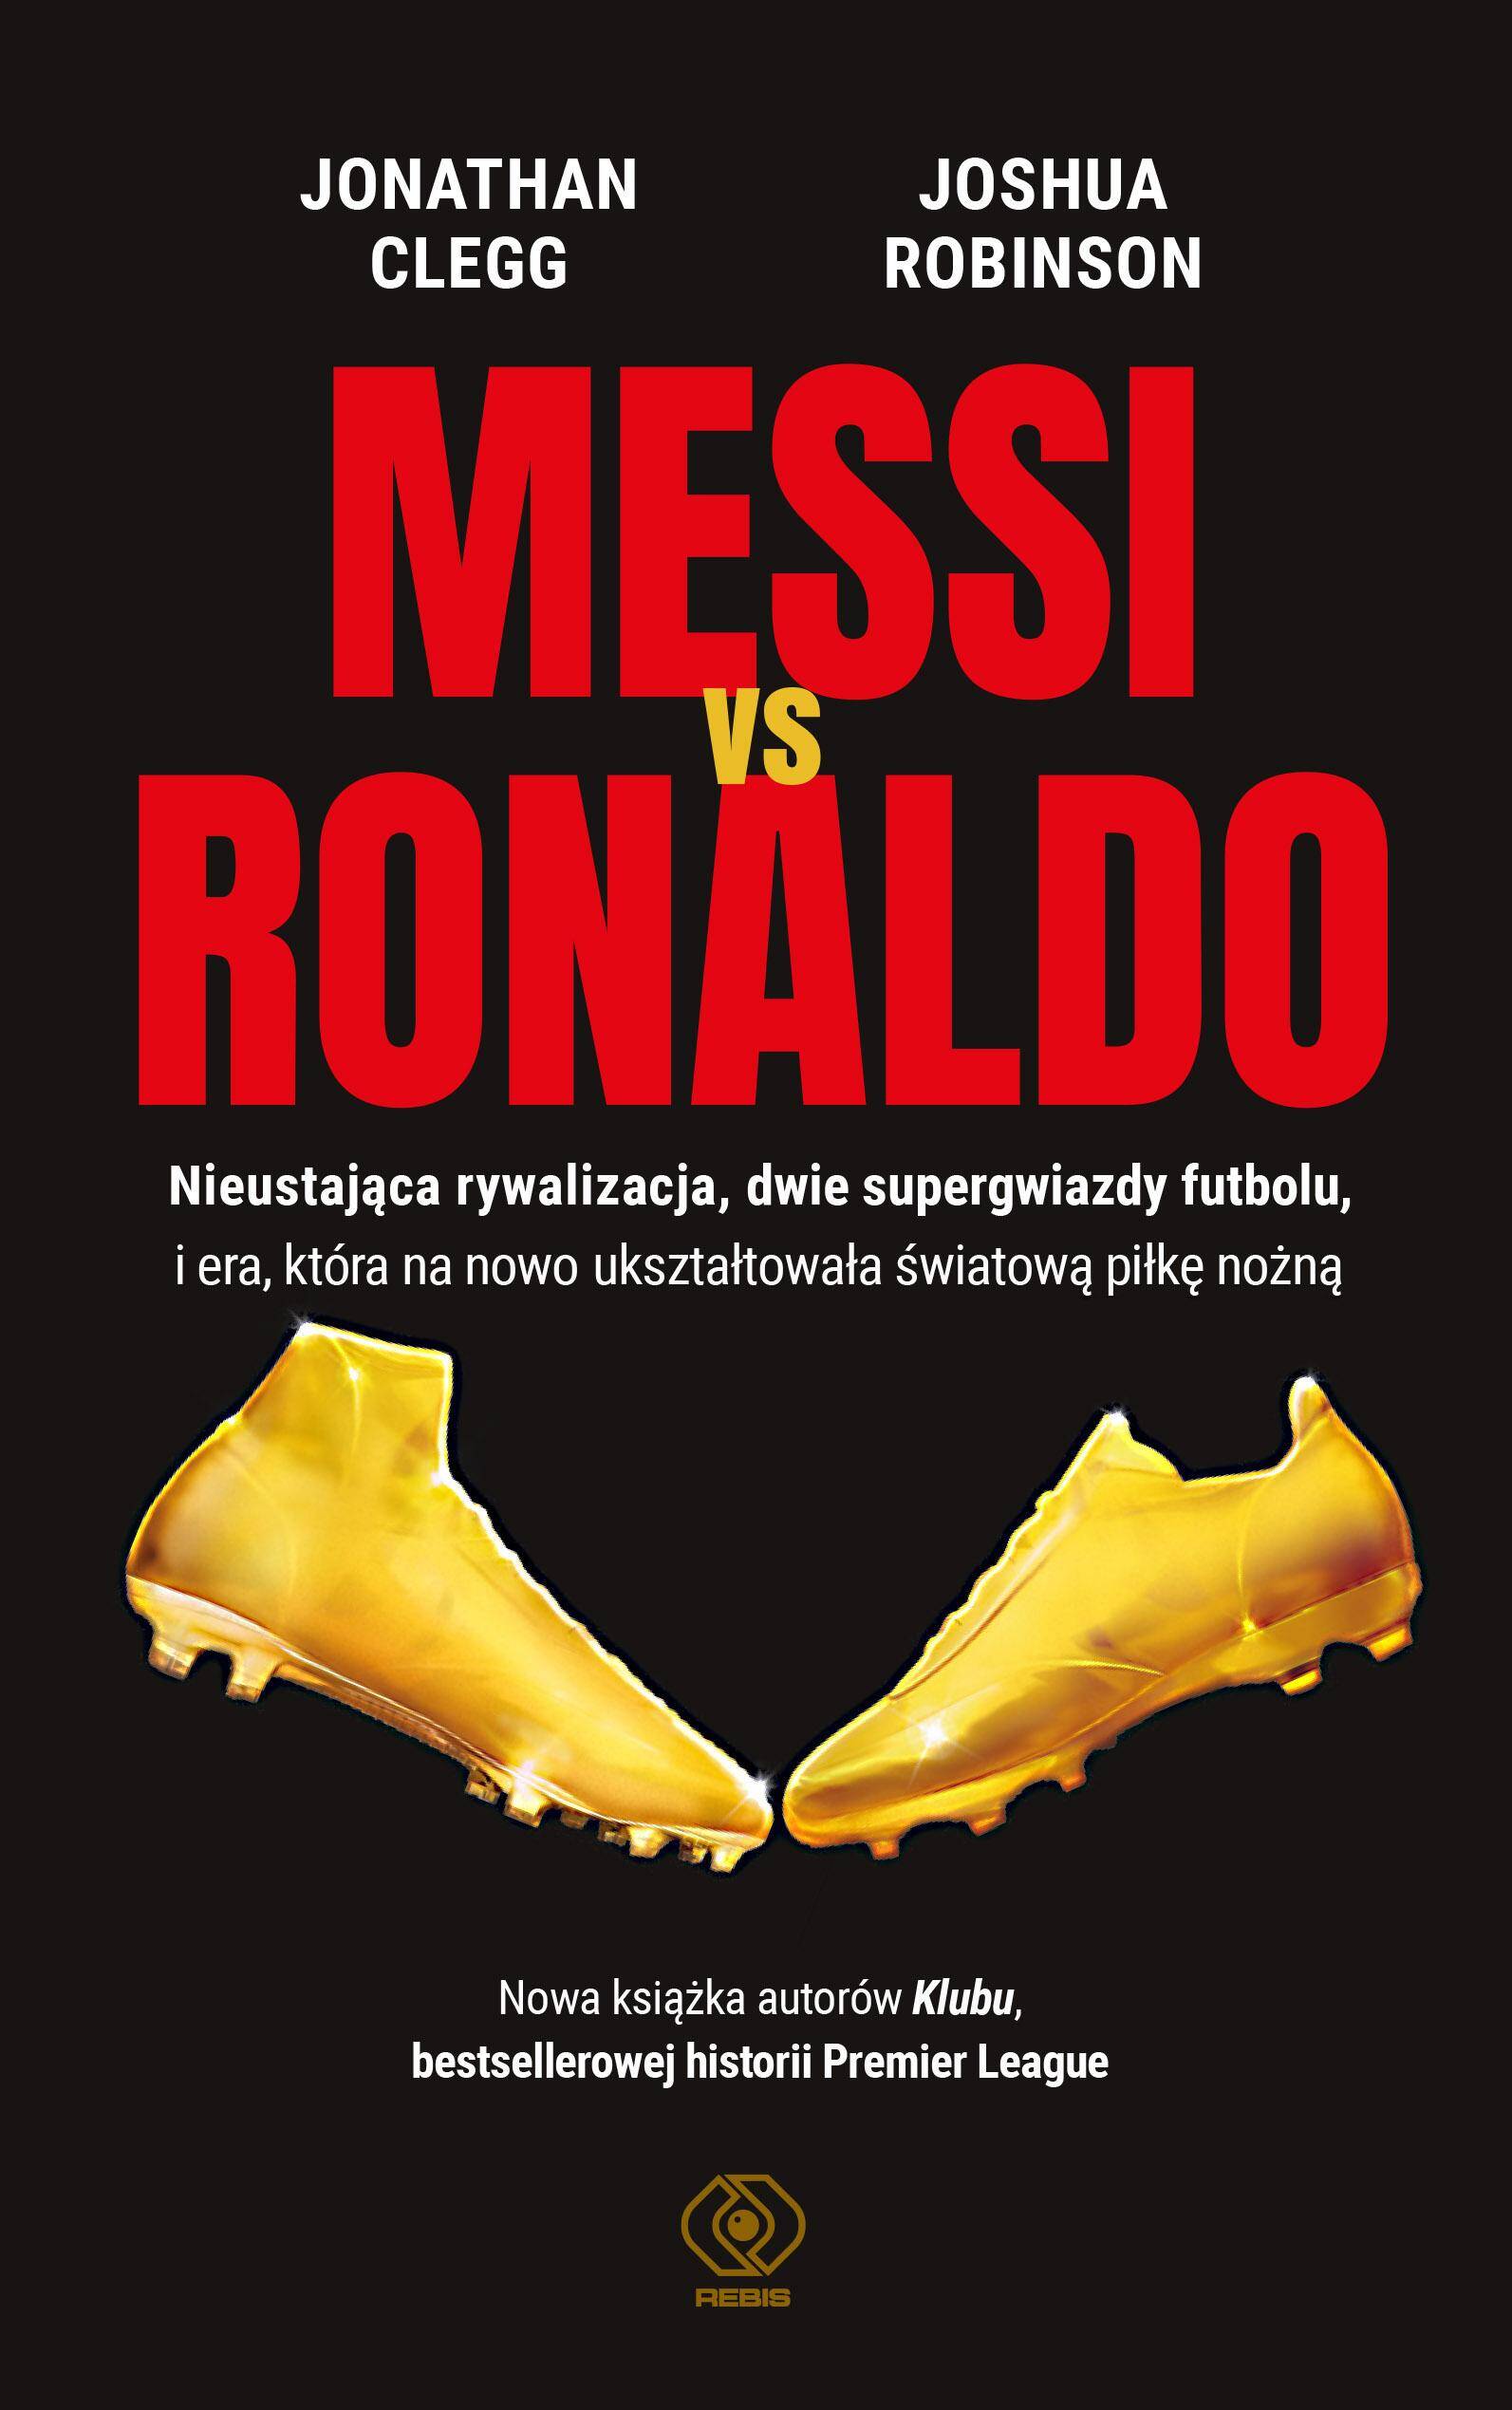 Messi vs. Ronaldo